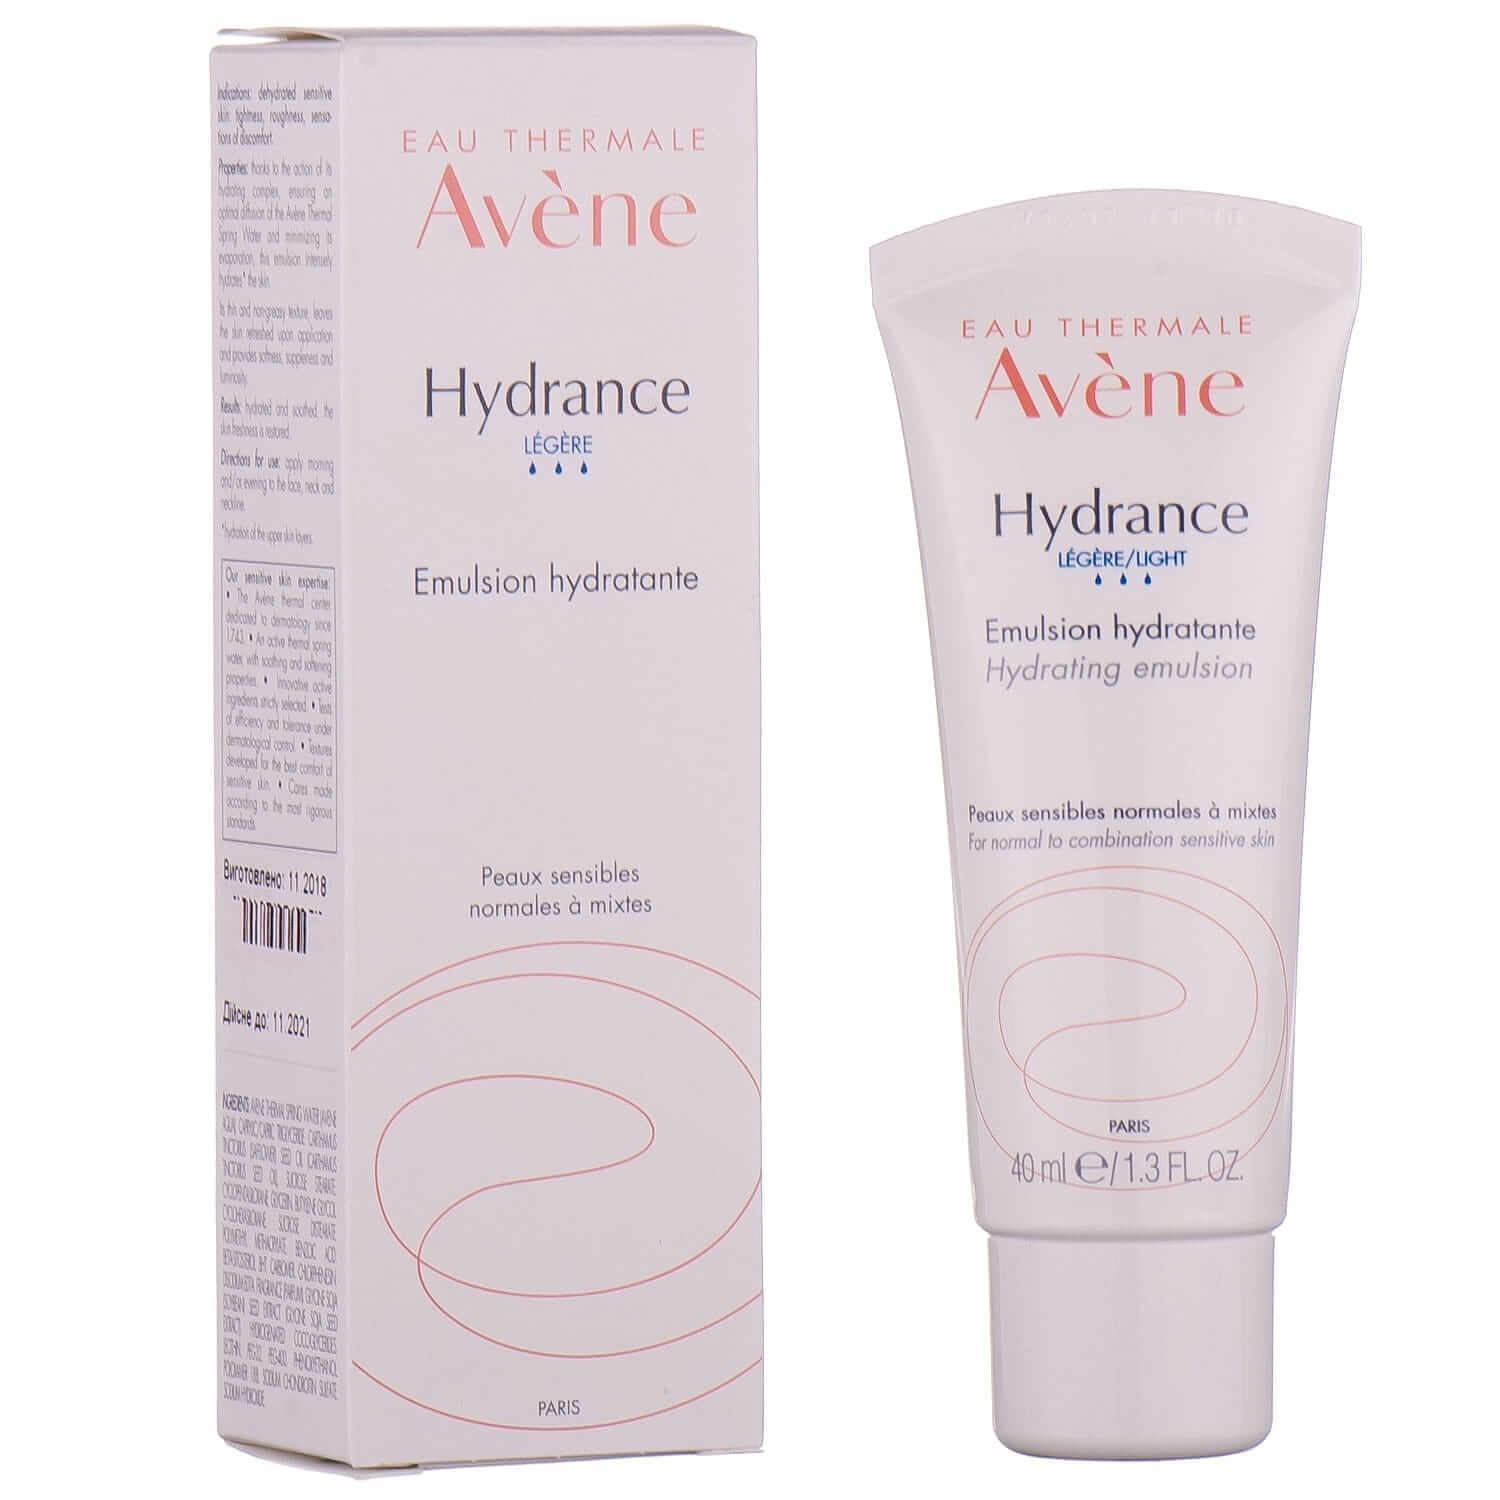 

Емульсія Avene Hydrance Legere/Light зволожуюча для нормальної і комбінованої шкіри, 40 мл, 40 мл